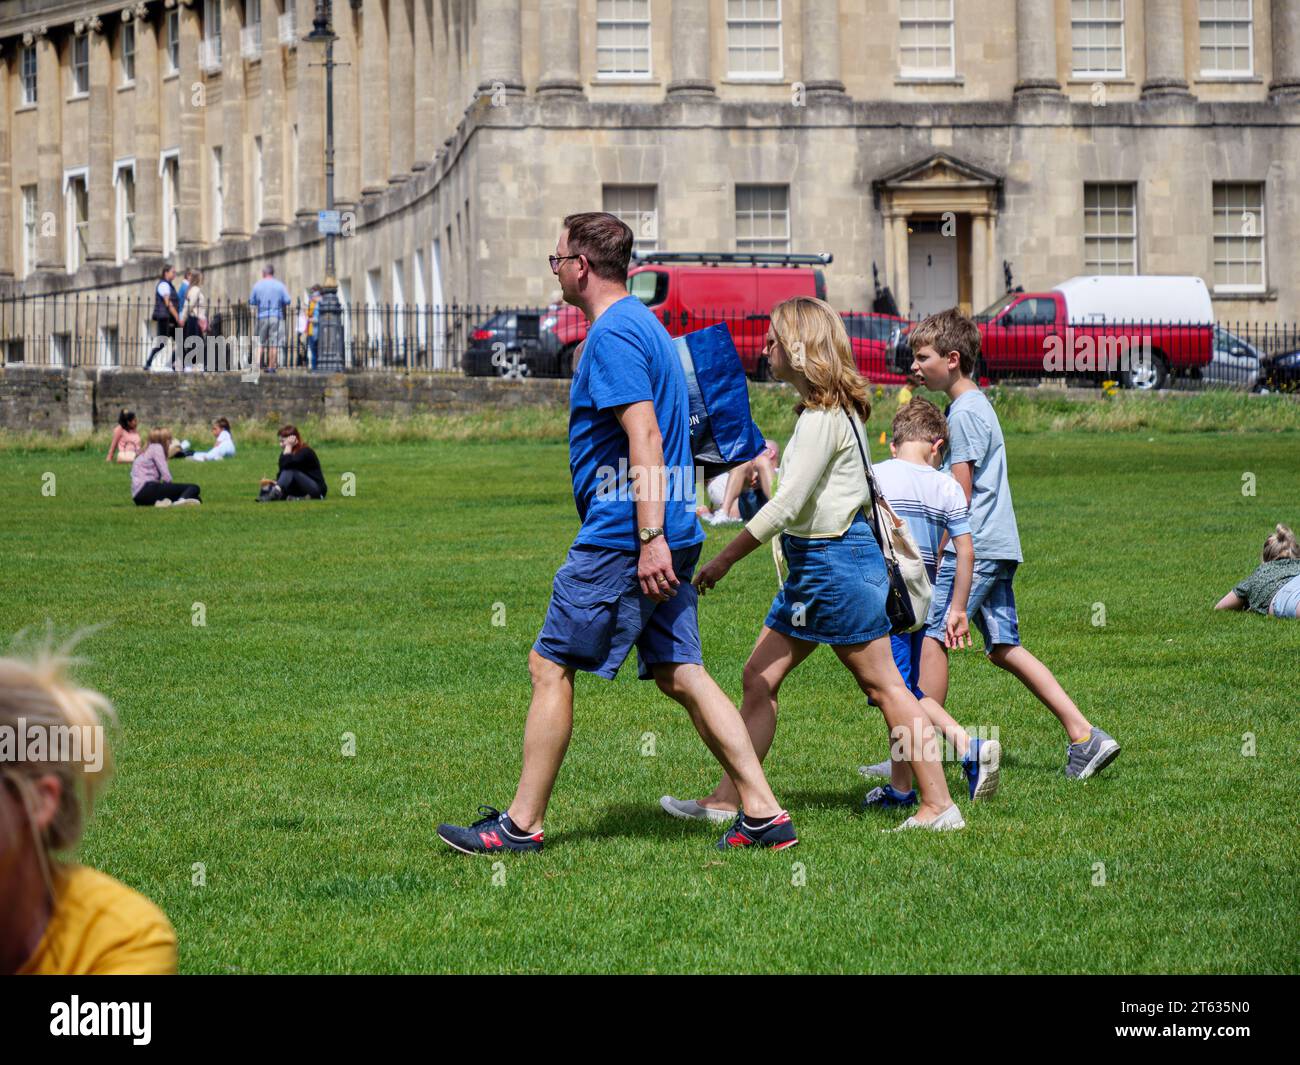 people enjoying the sunshine by the royal Crescent, Bath, Somerset, England, UK Stock Photo